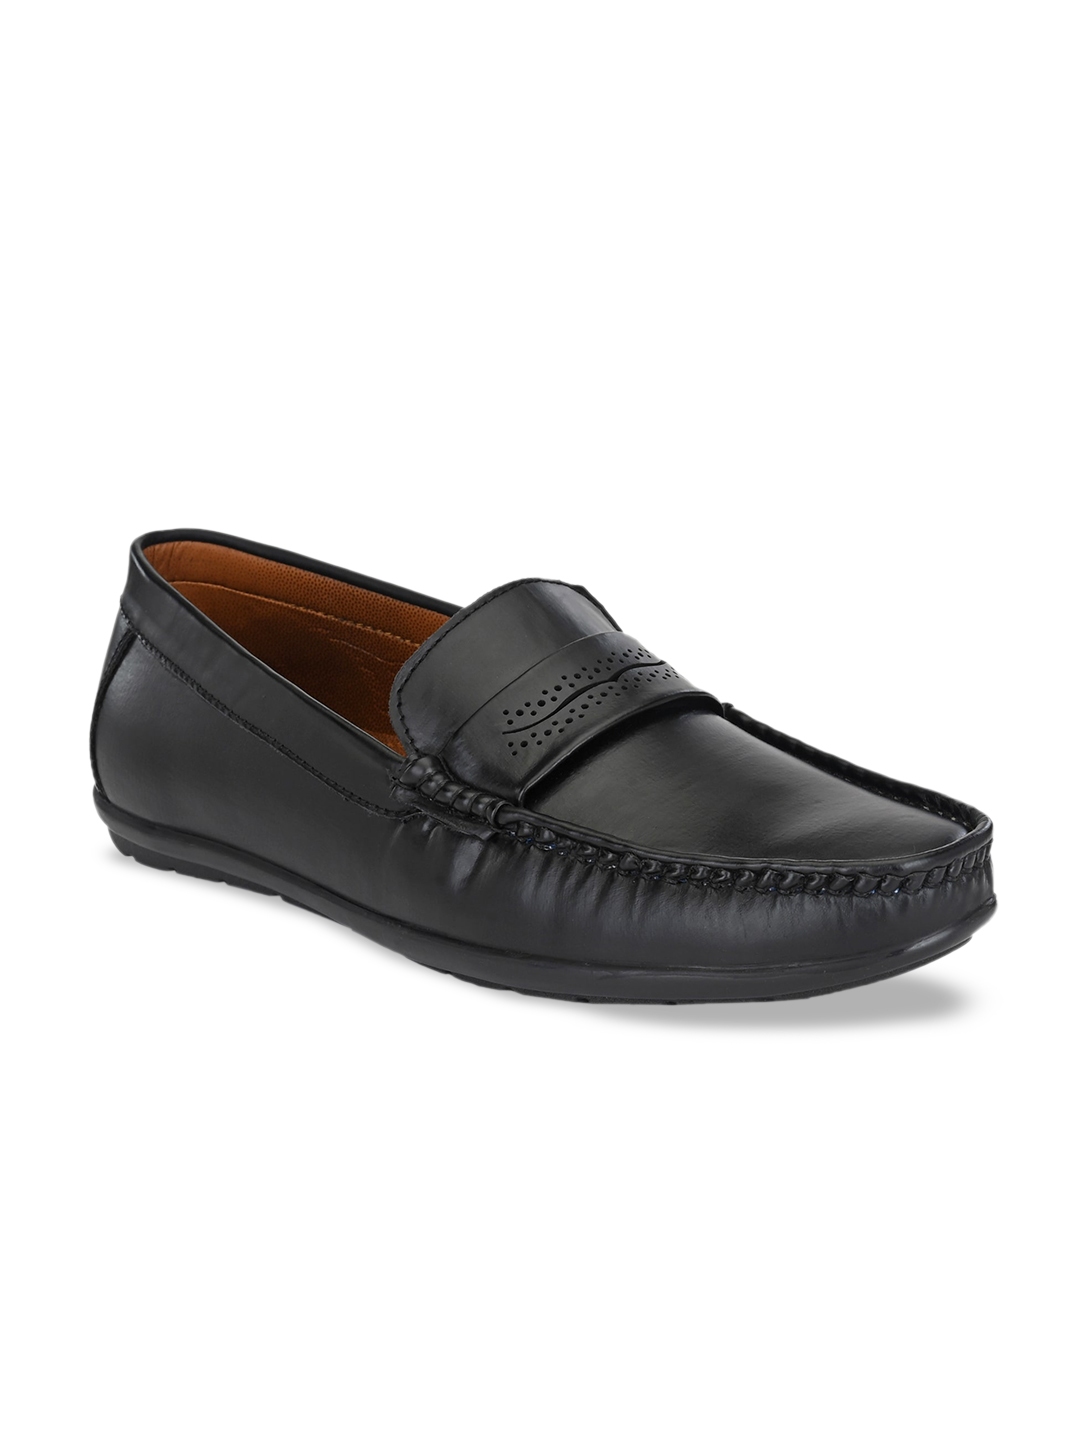 Buy Prolific Men Black Solid Formal Loafers - Formal Shoes for Men ...